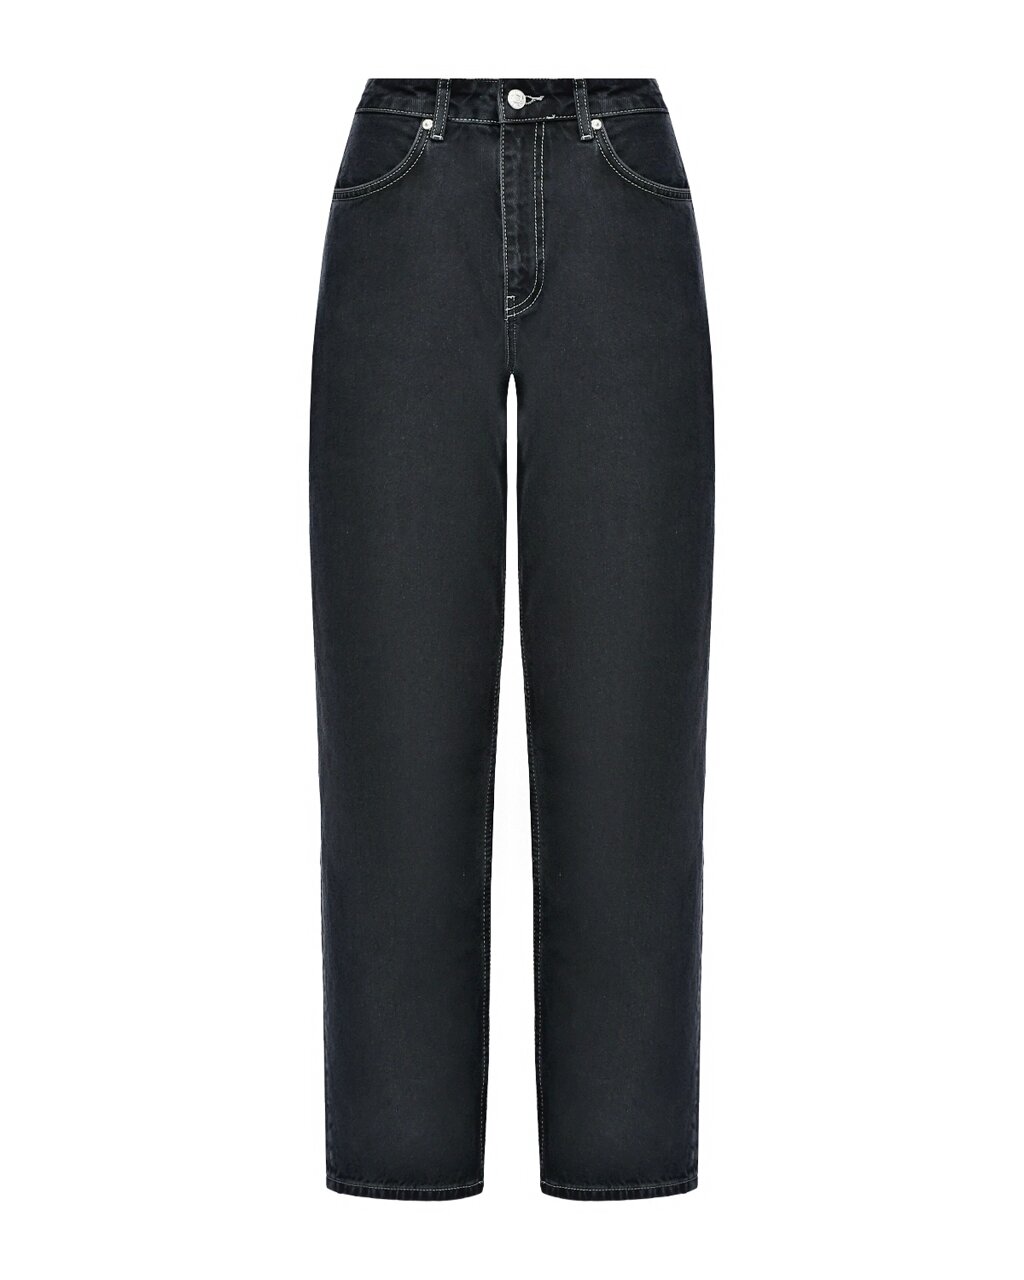 Зауженные черные джинсы Mo5ch1no Jeans от компании Admi - фото 1